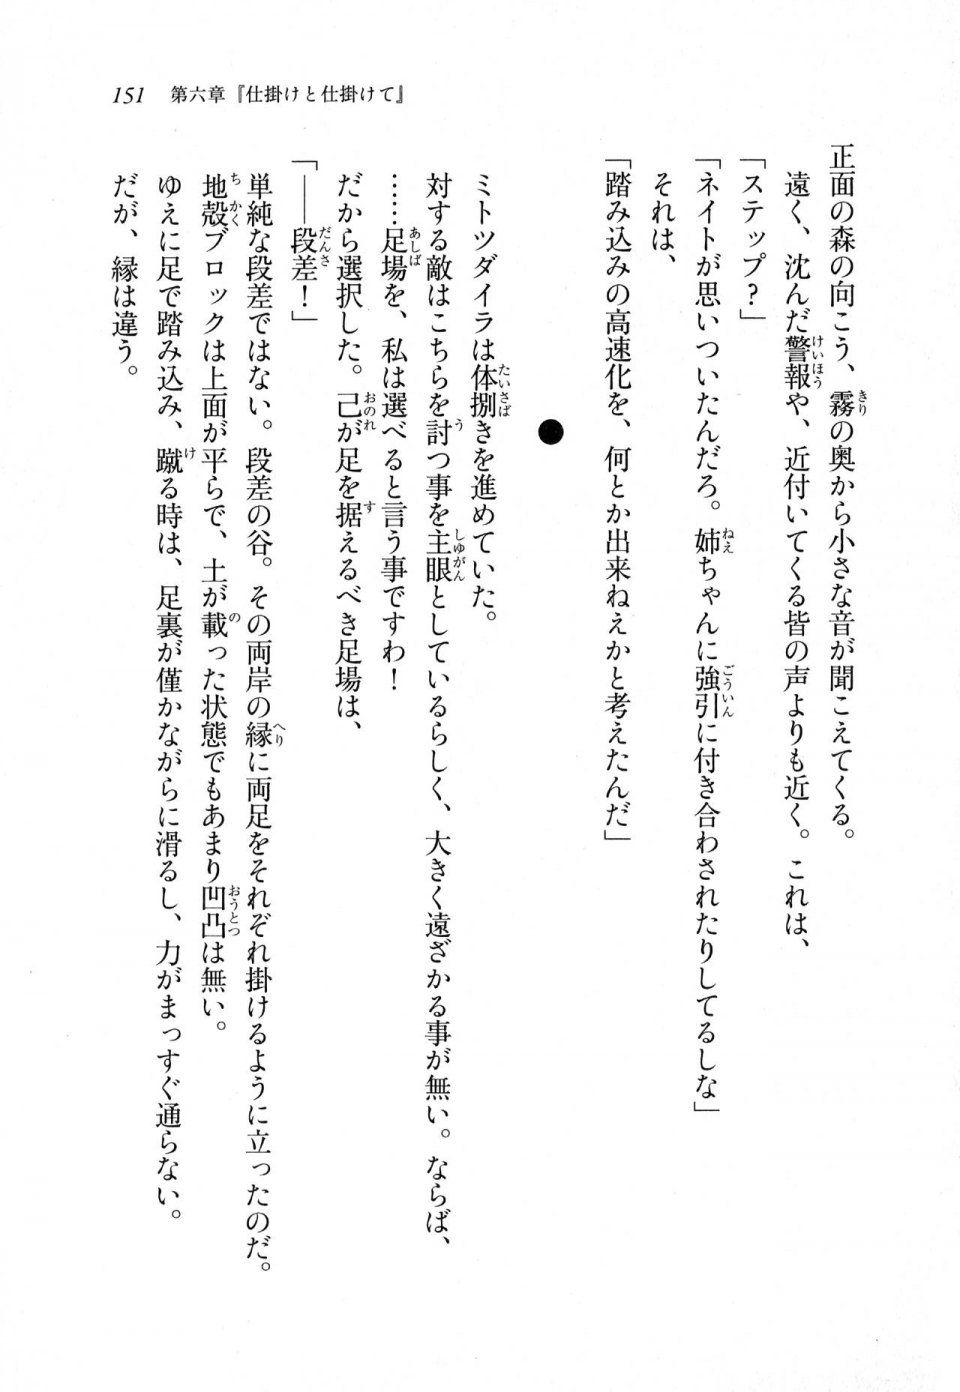 Kyoukai Senjou no Horizon LN Sidestory Vol 1 - Photo #149